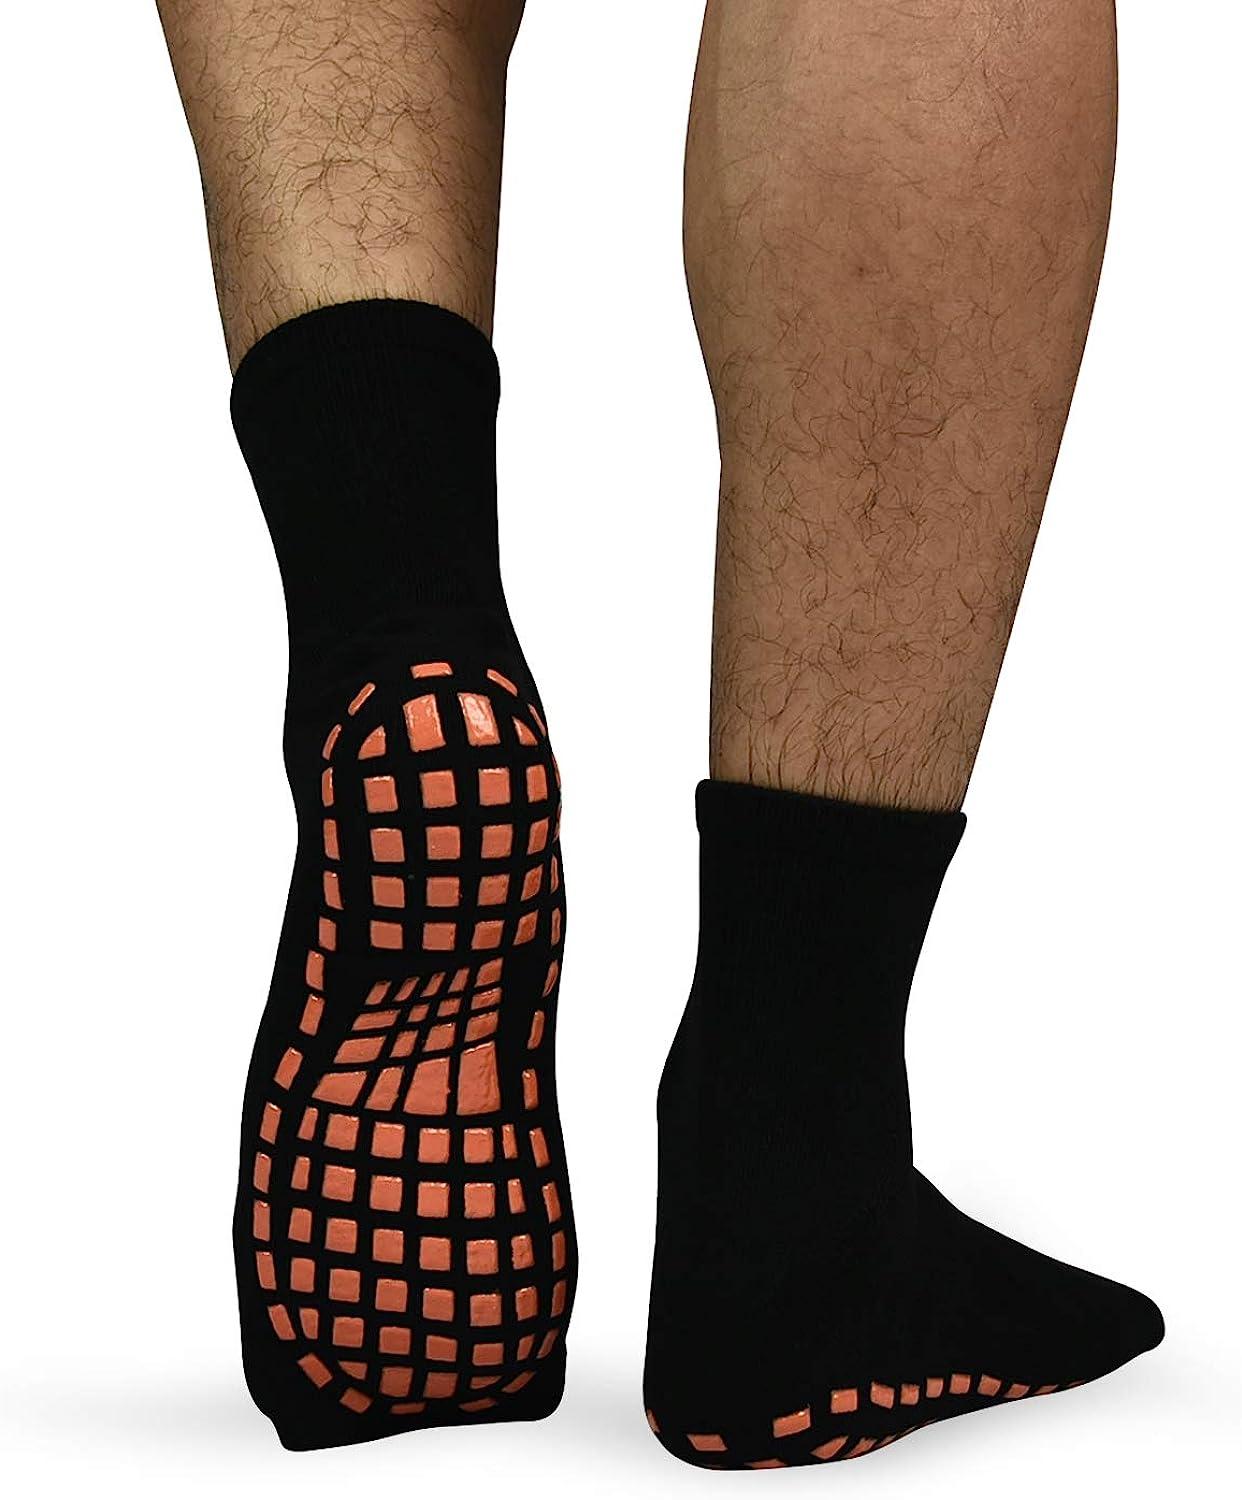 Grip Socks Non Skid Anti Slip Socks for Women and Men,3 Pairs Skid